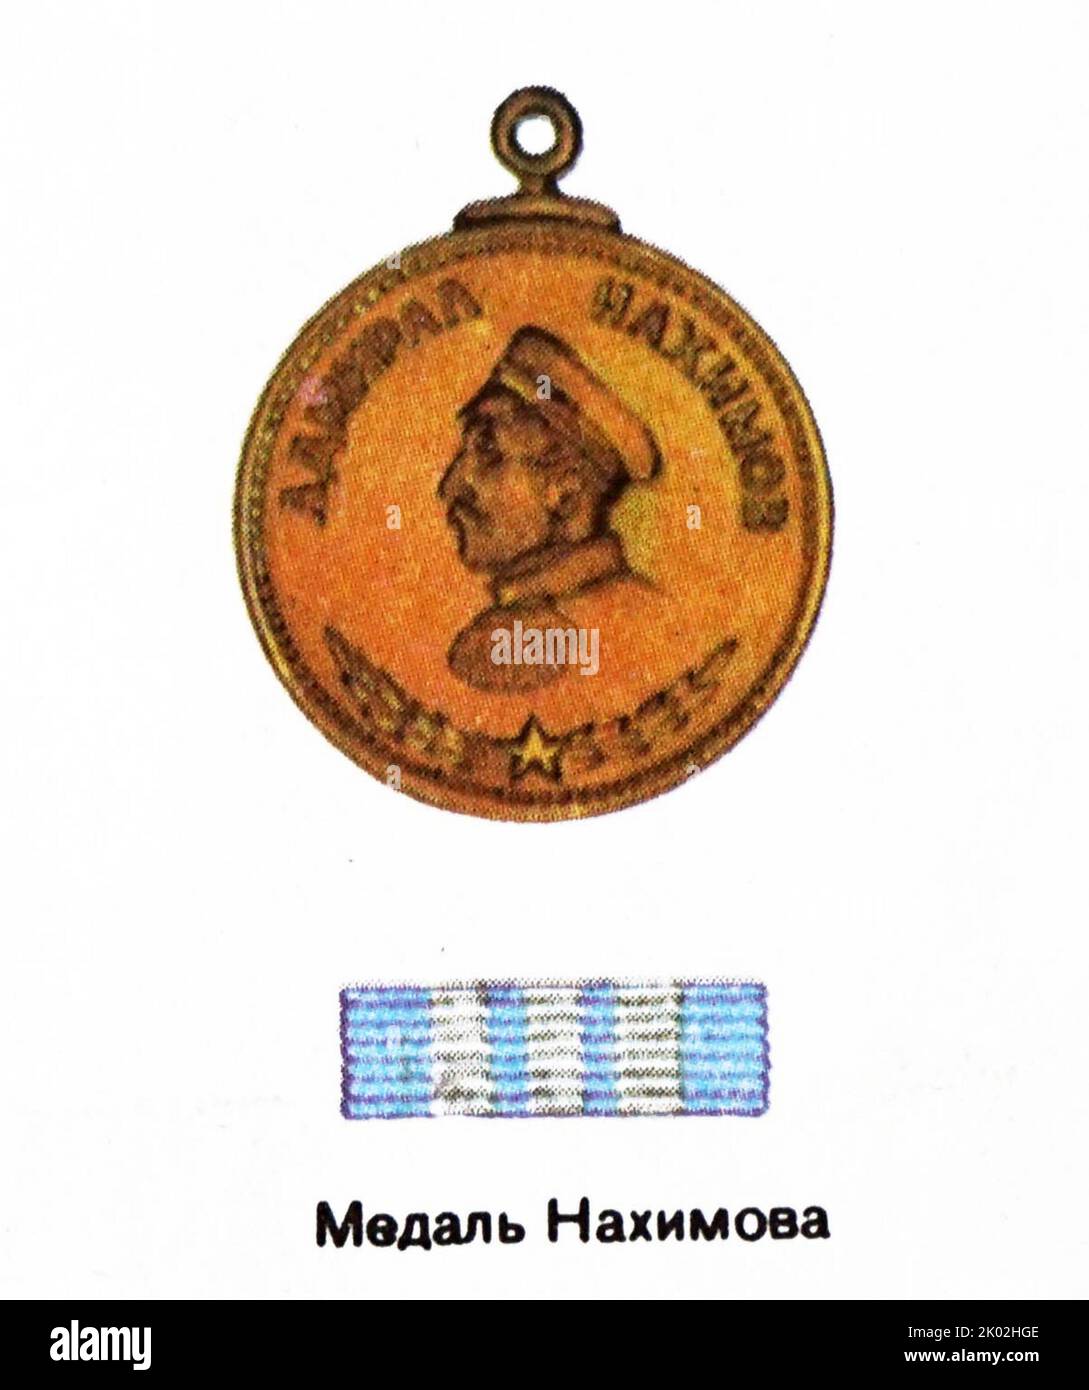 La Medaglia di Nakhimov fu un premio militare sovietico creato il 3 marzo 1944 per decisione del Soviet Supremo dell'URSS, per premiare la distinzione nella difesa della patria socialista e per riconoscere attivamente missioni di combattimento di successo sulle navi, In unità della Marina o delle guardie di frontiera. Il nome fu dato in onore dell'ammiraglio russo Pavel Nakhimov, uno dei più famosi ammiragli della storia navale russa. Foto Stock